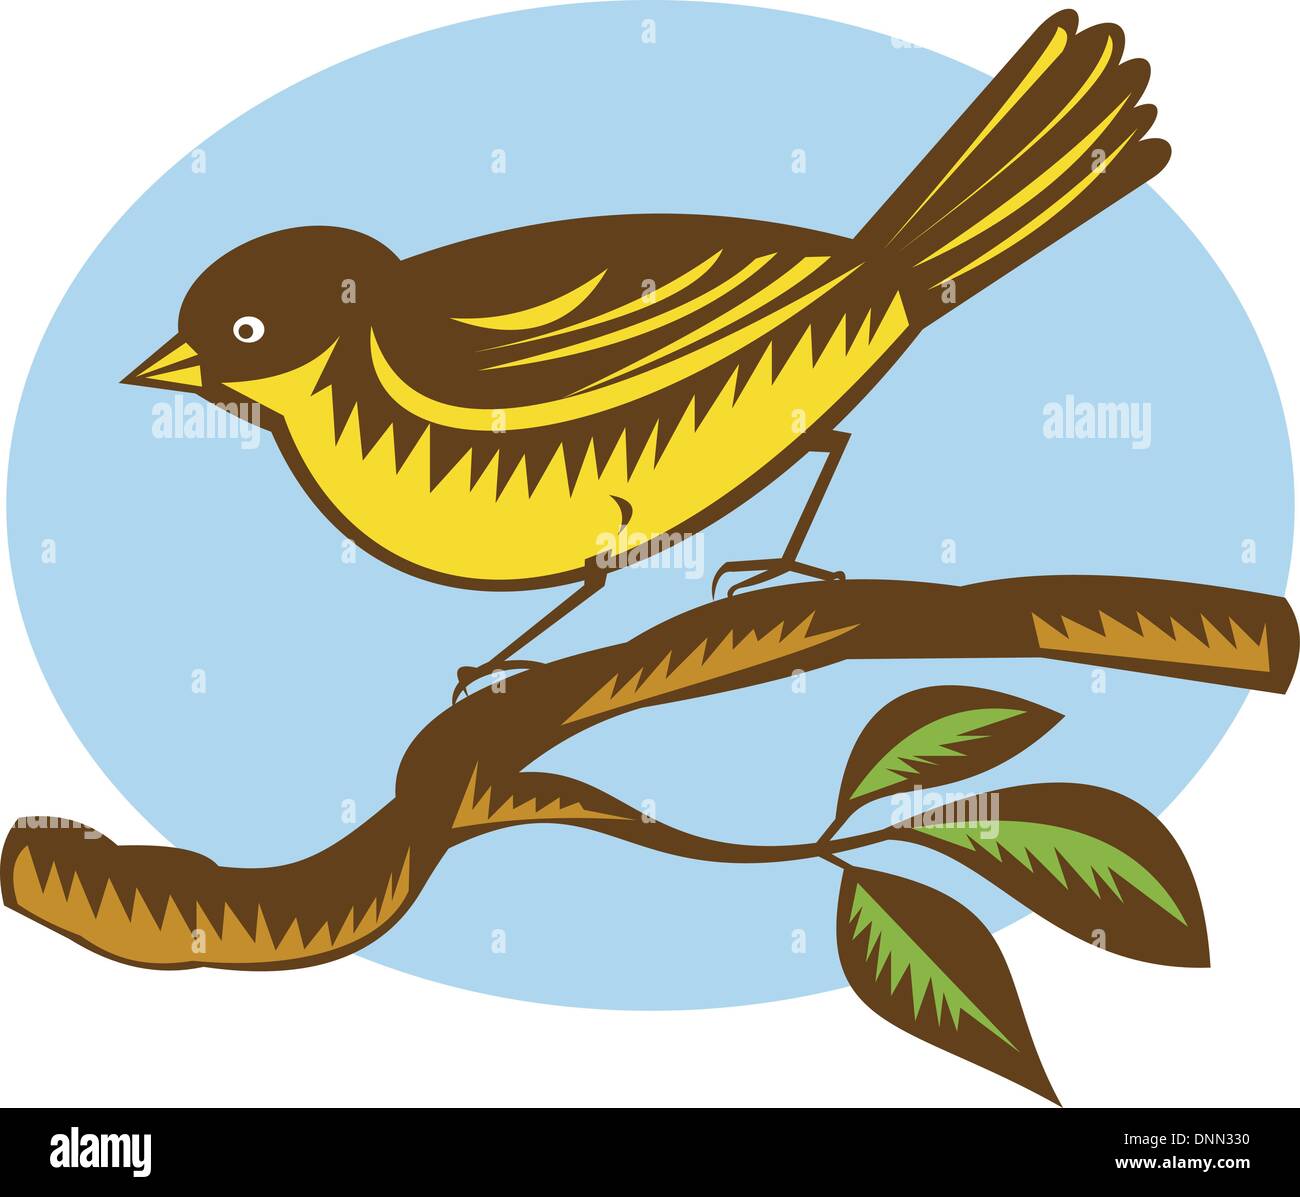 Ilustración de una Nueva Zelandia asesoramiento tecnico. pájaro sobre una rama realizada en xilografía estilo retro Ilustración del Vector